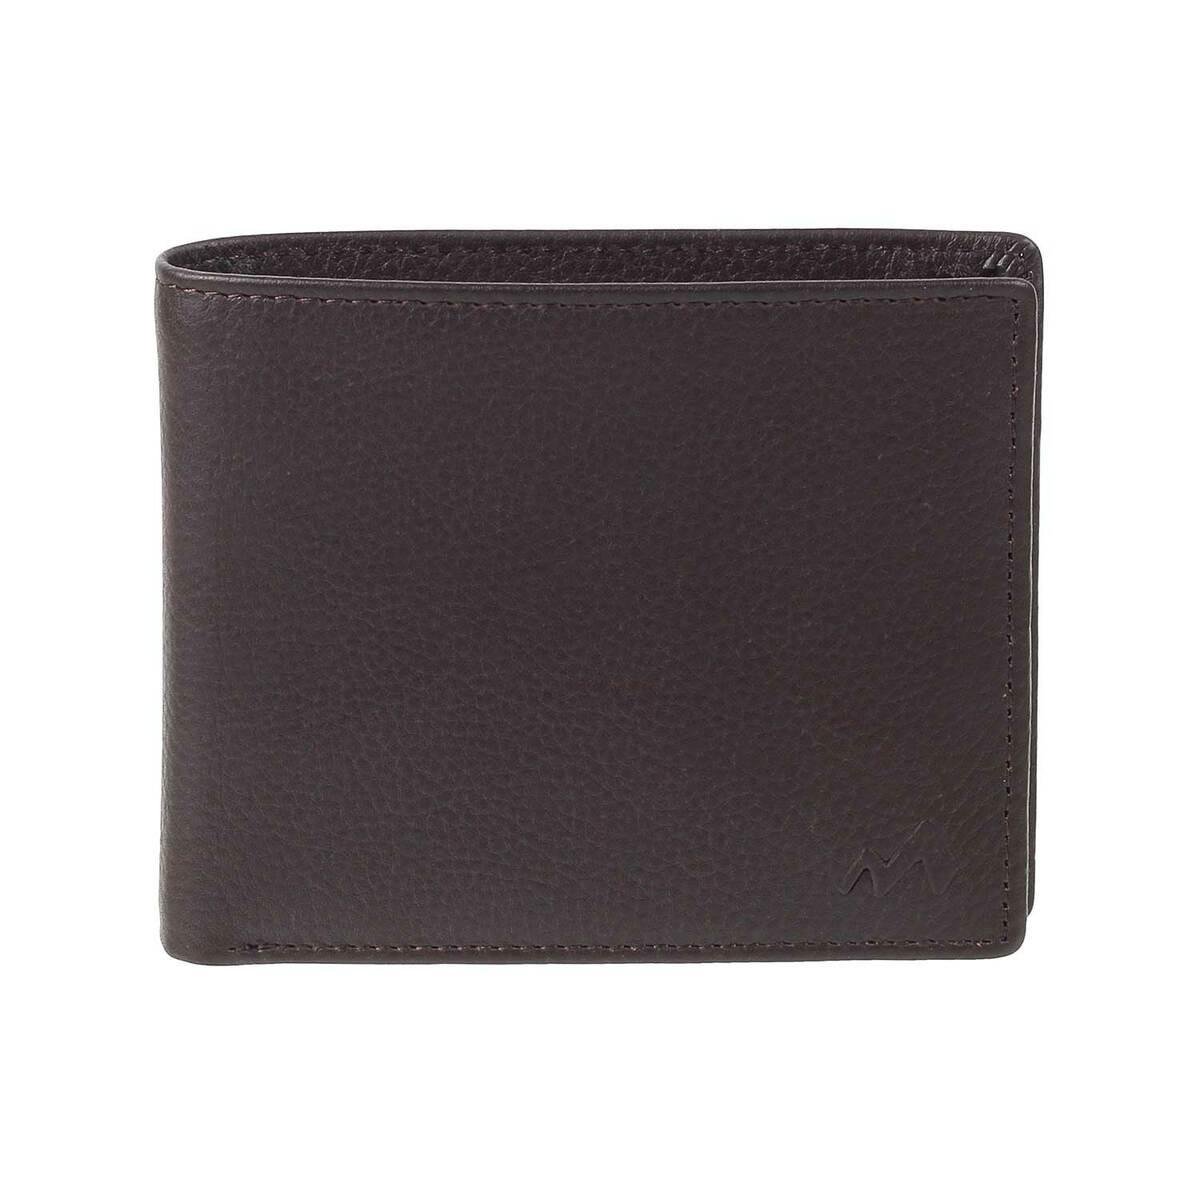 WESTAL men's purse genuine leather men's wallet vintage purse for men  credit card holder male wallet slim money bag for men 7040 - AliExpress